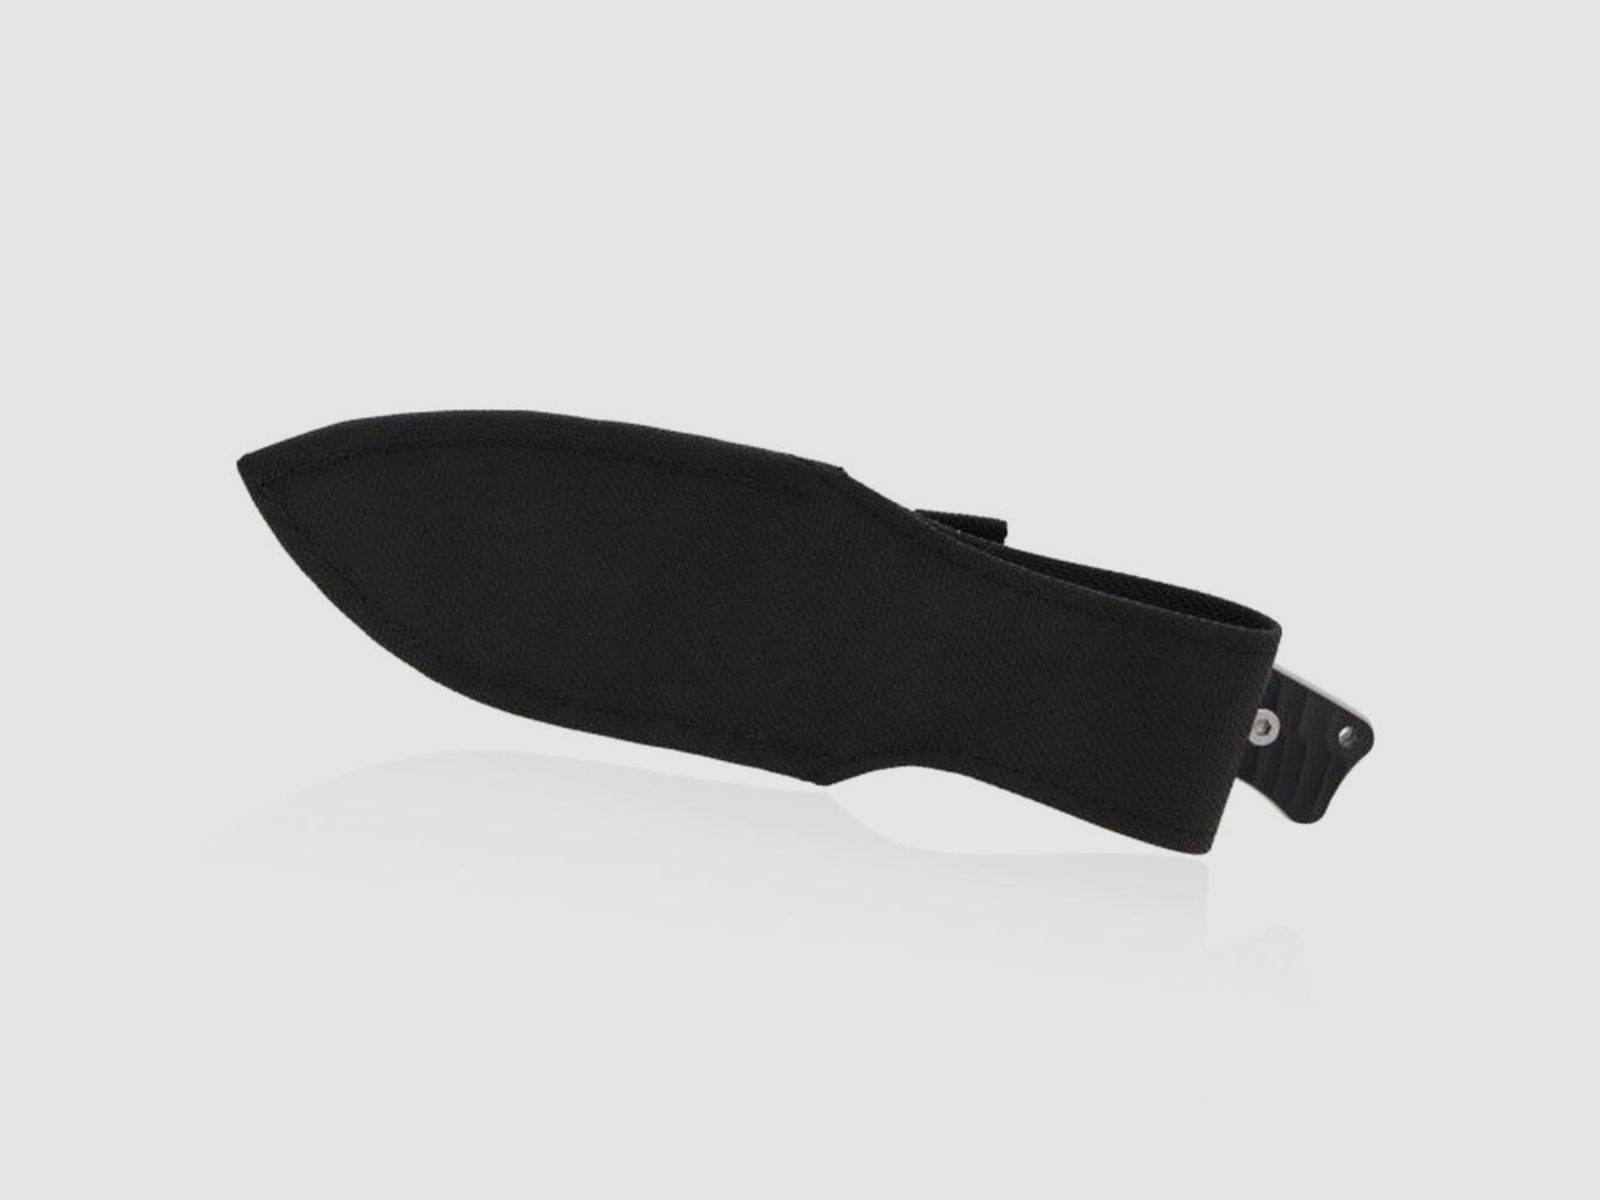 enforcer Rhino Full-Tang Messer mit massiver 12 cm langer Klinge